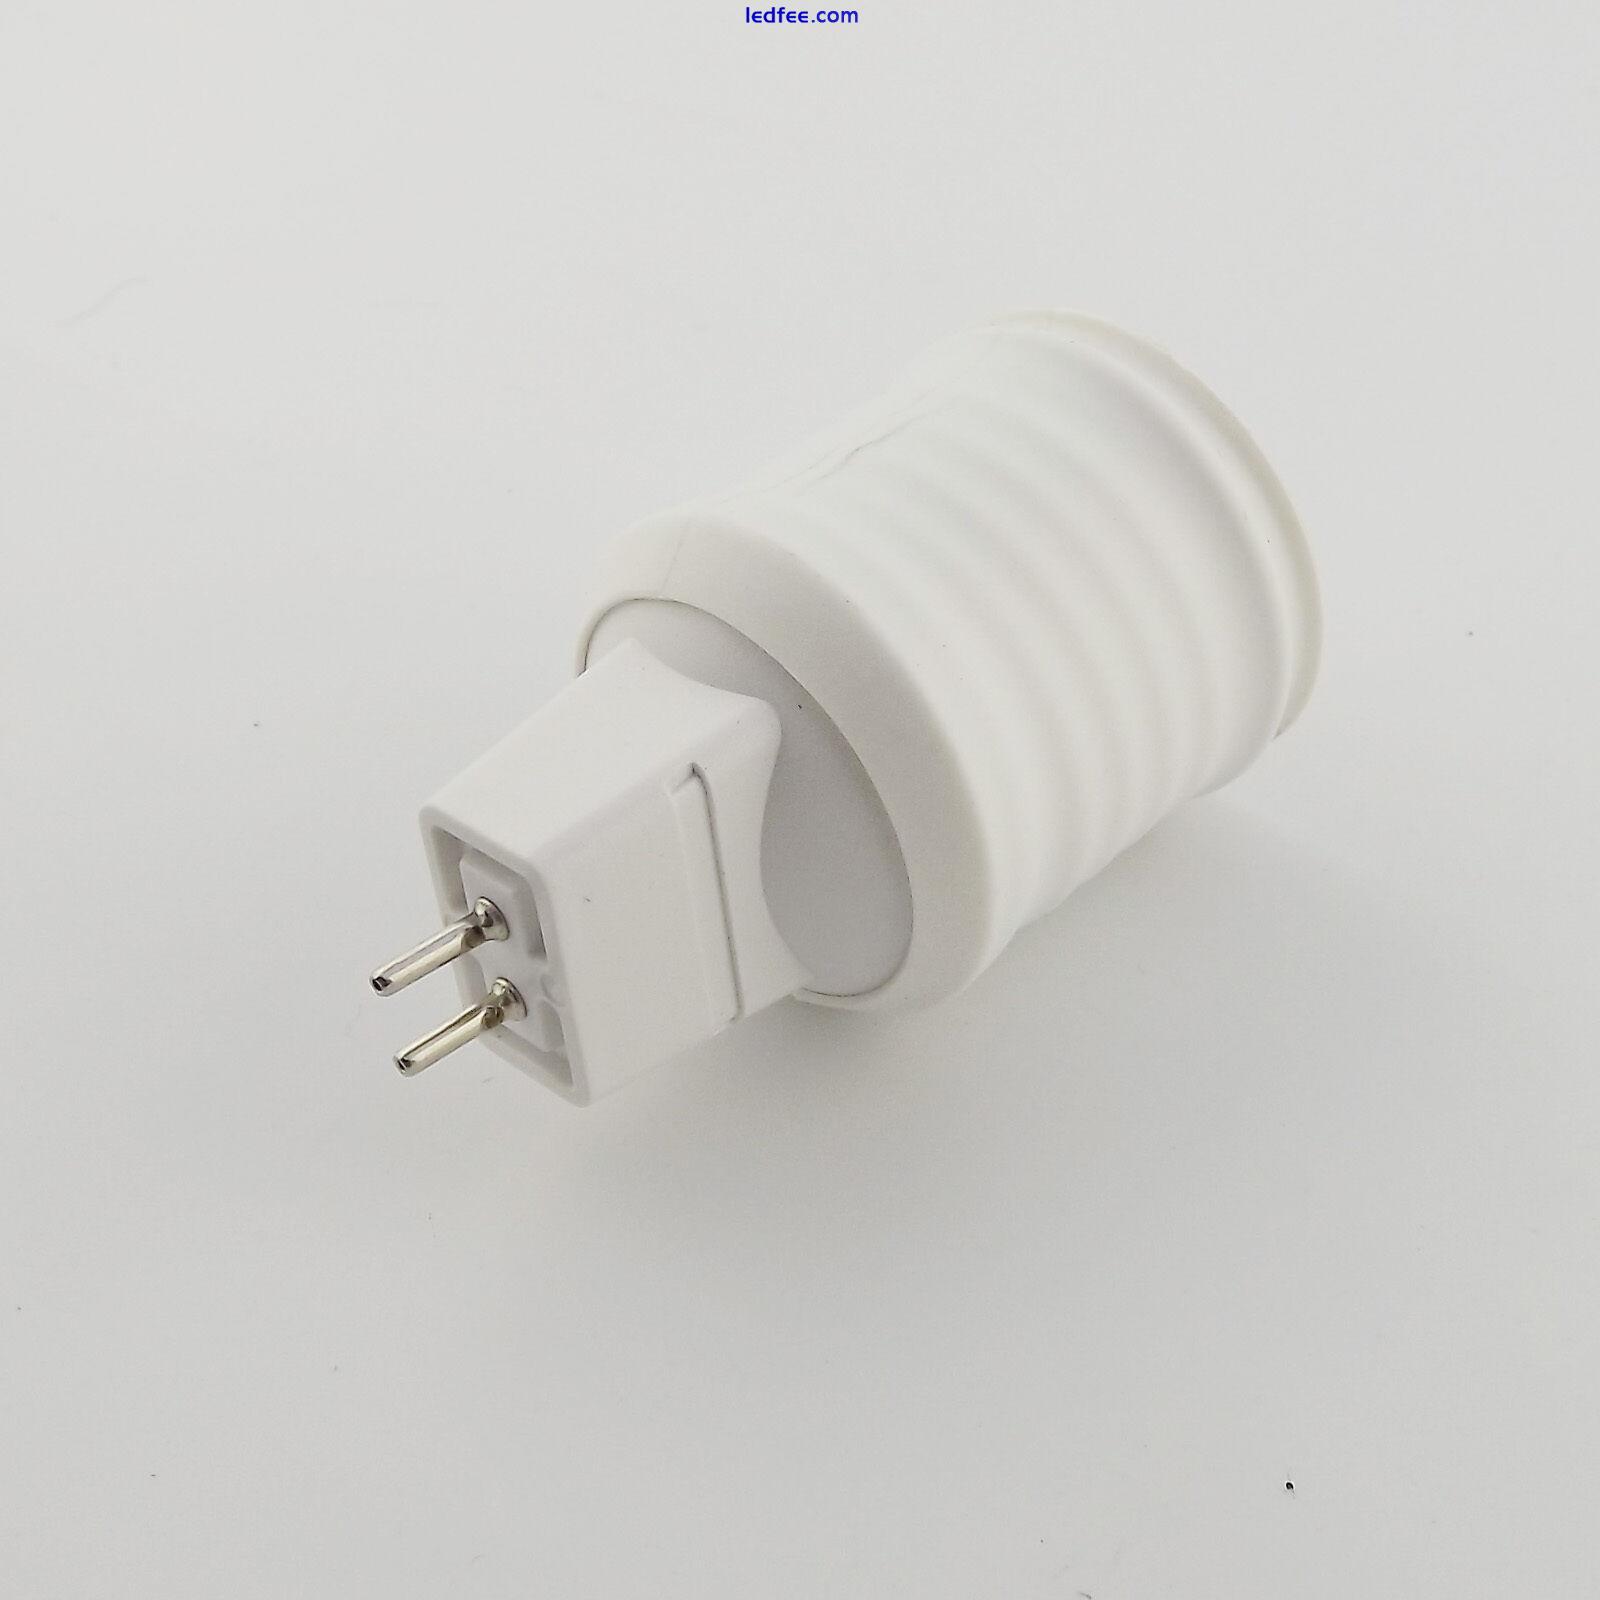 1pcs MR16 Lamp Socket to E27 Screw Thread LED Bulb Base Converter Adapter Holder 3 